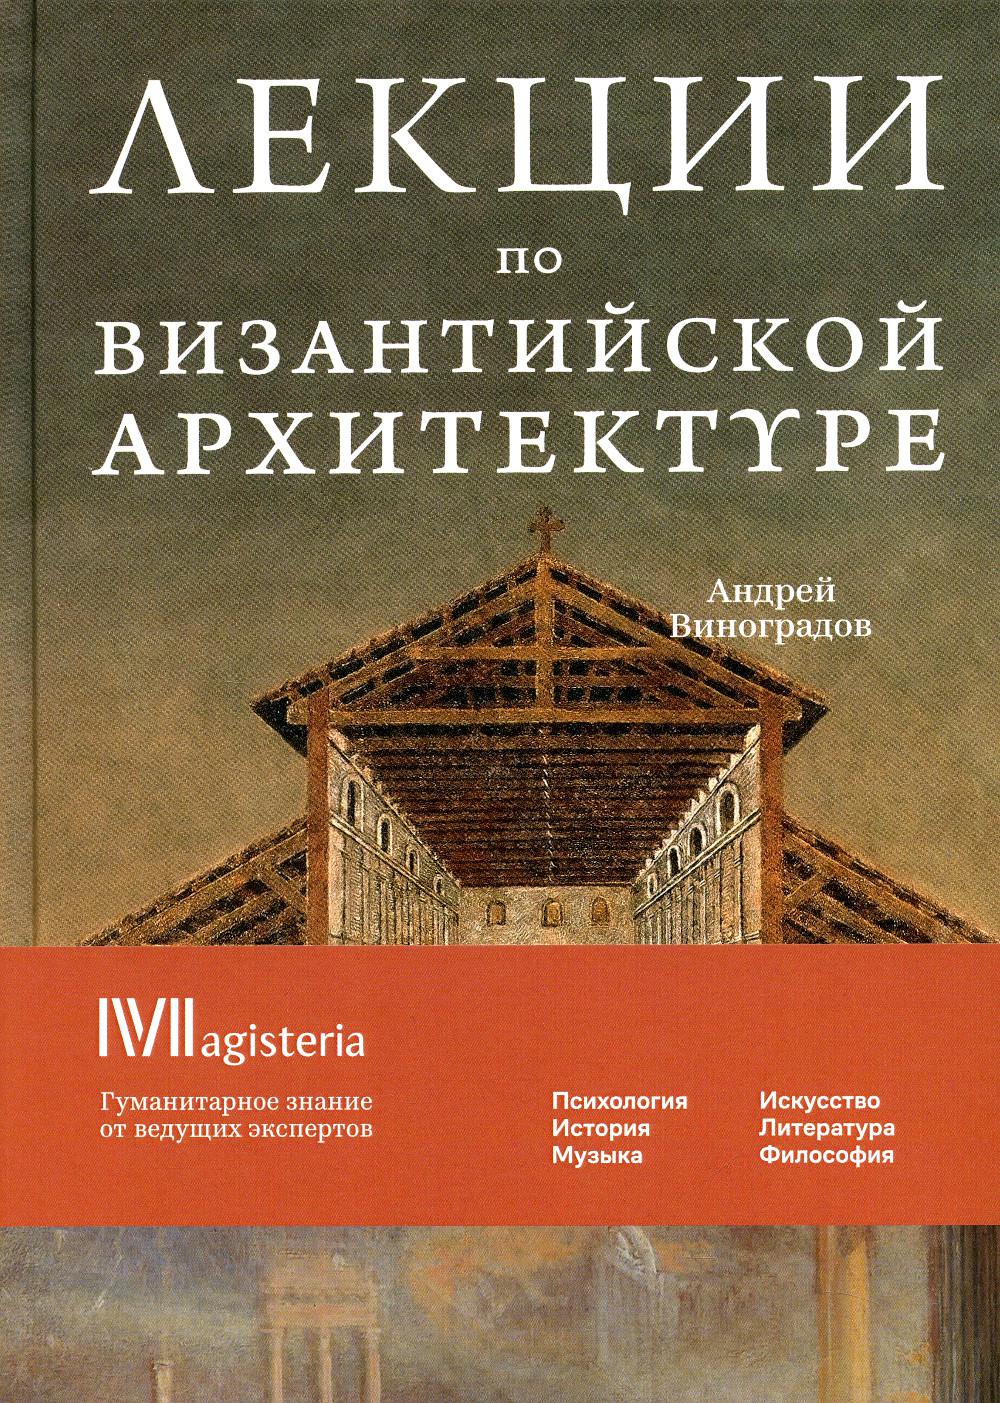 Лекции по Византийской архитектуре. 15 лекций для проекта Магистерия